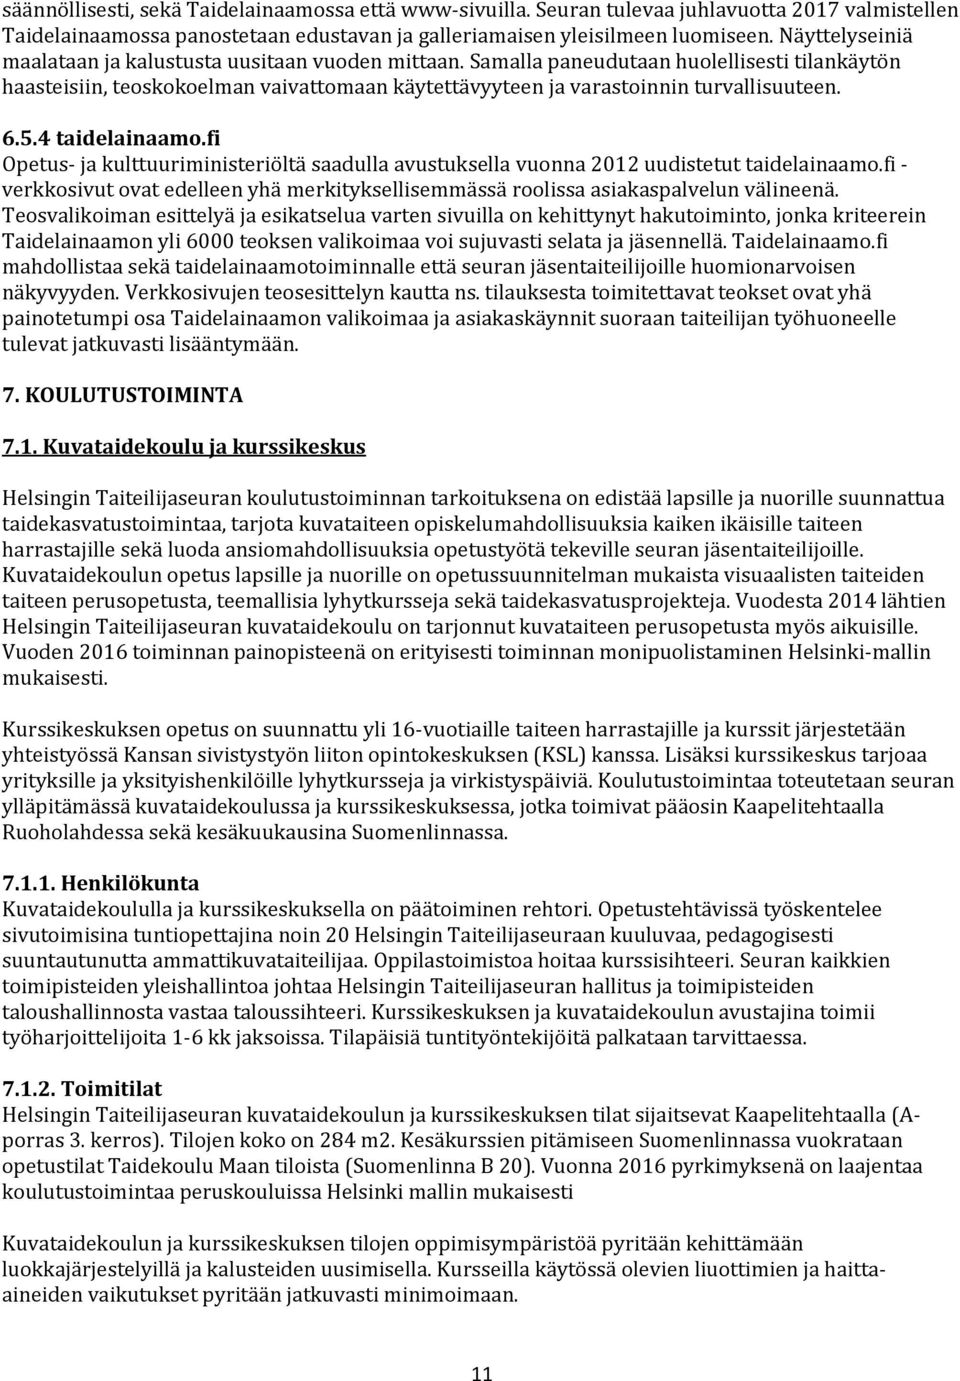 6.5.4 taidelainaamo.fi Opetus- ja kulttuuriministeriöltä saadulla avustuksella vuonna 2012 uudistetut taidelainaamo.